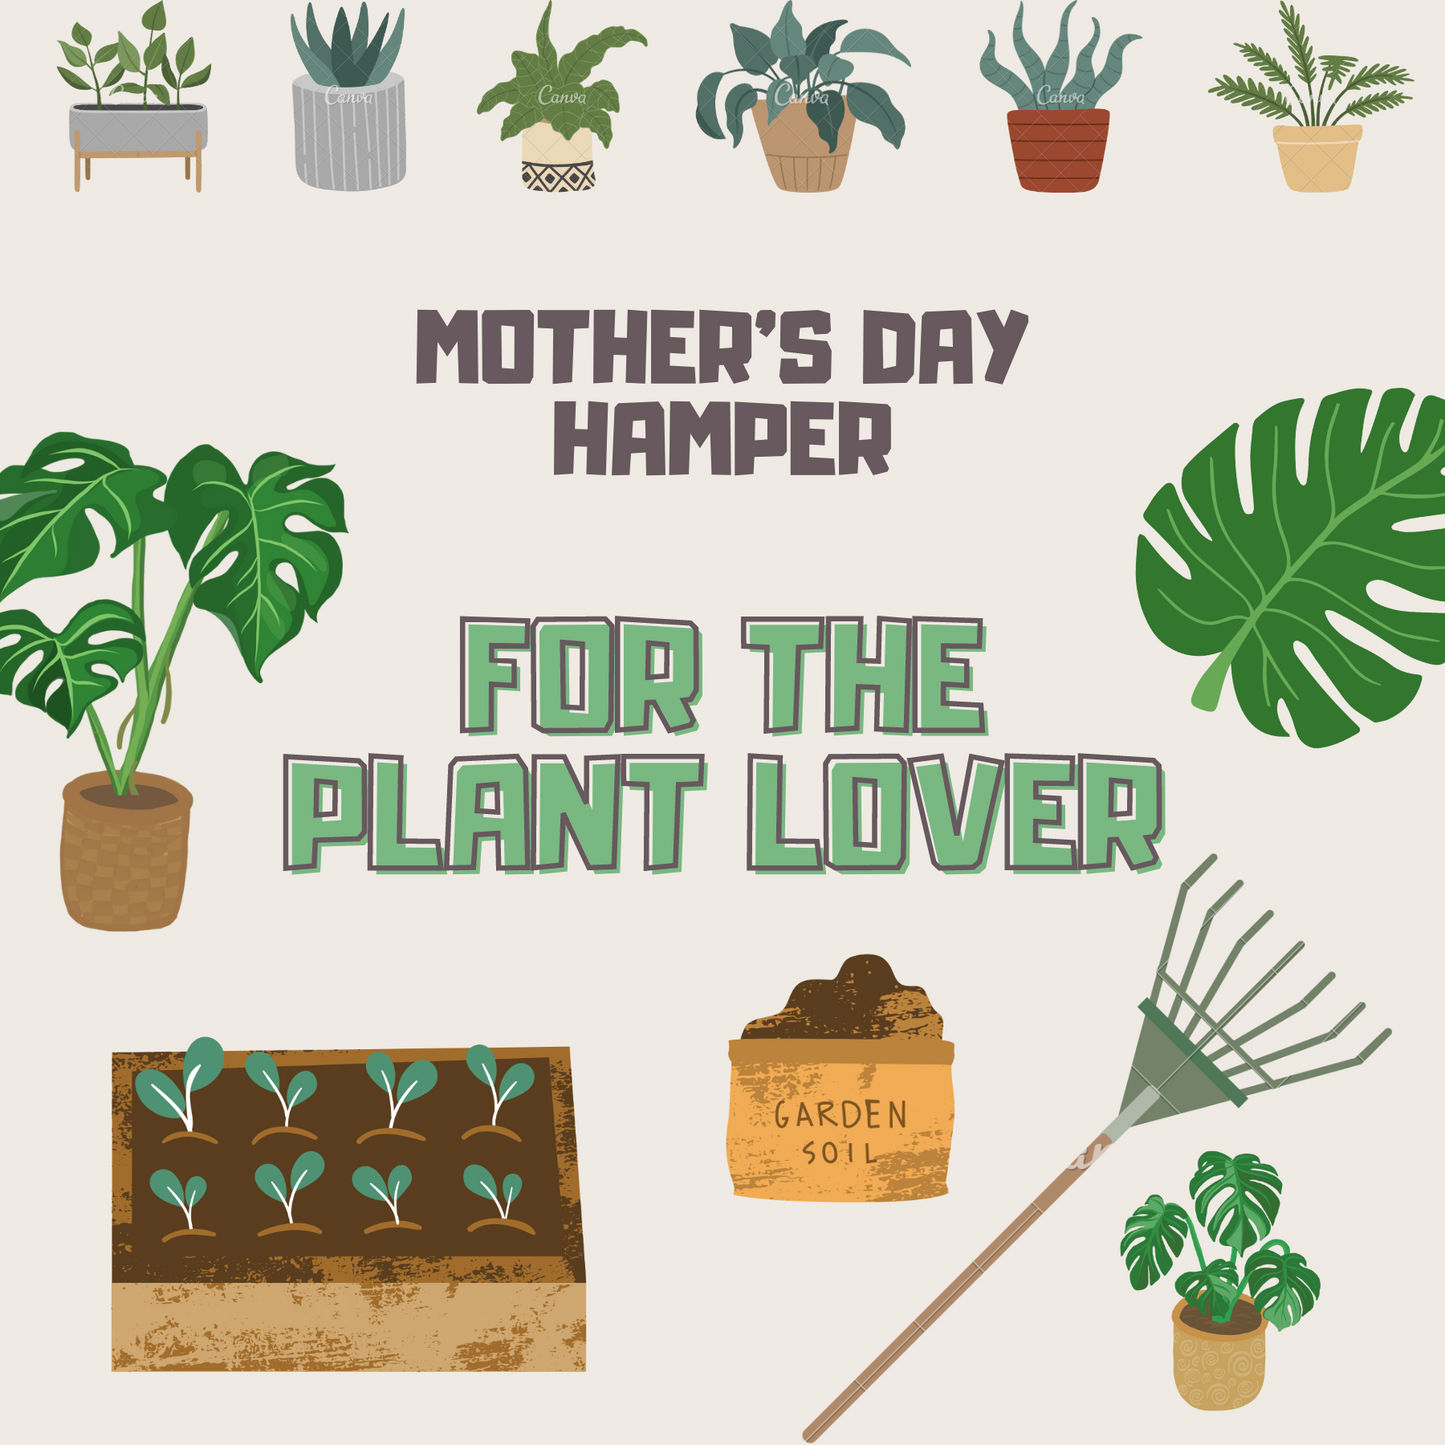 Mother's Day Hamper For the Avid Gardener